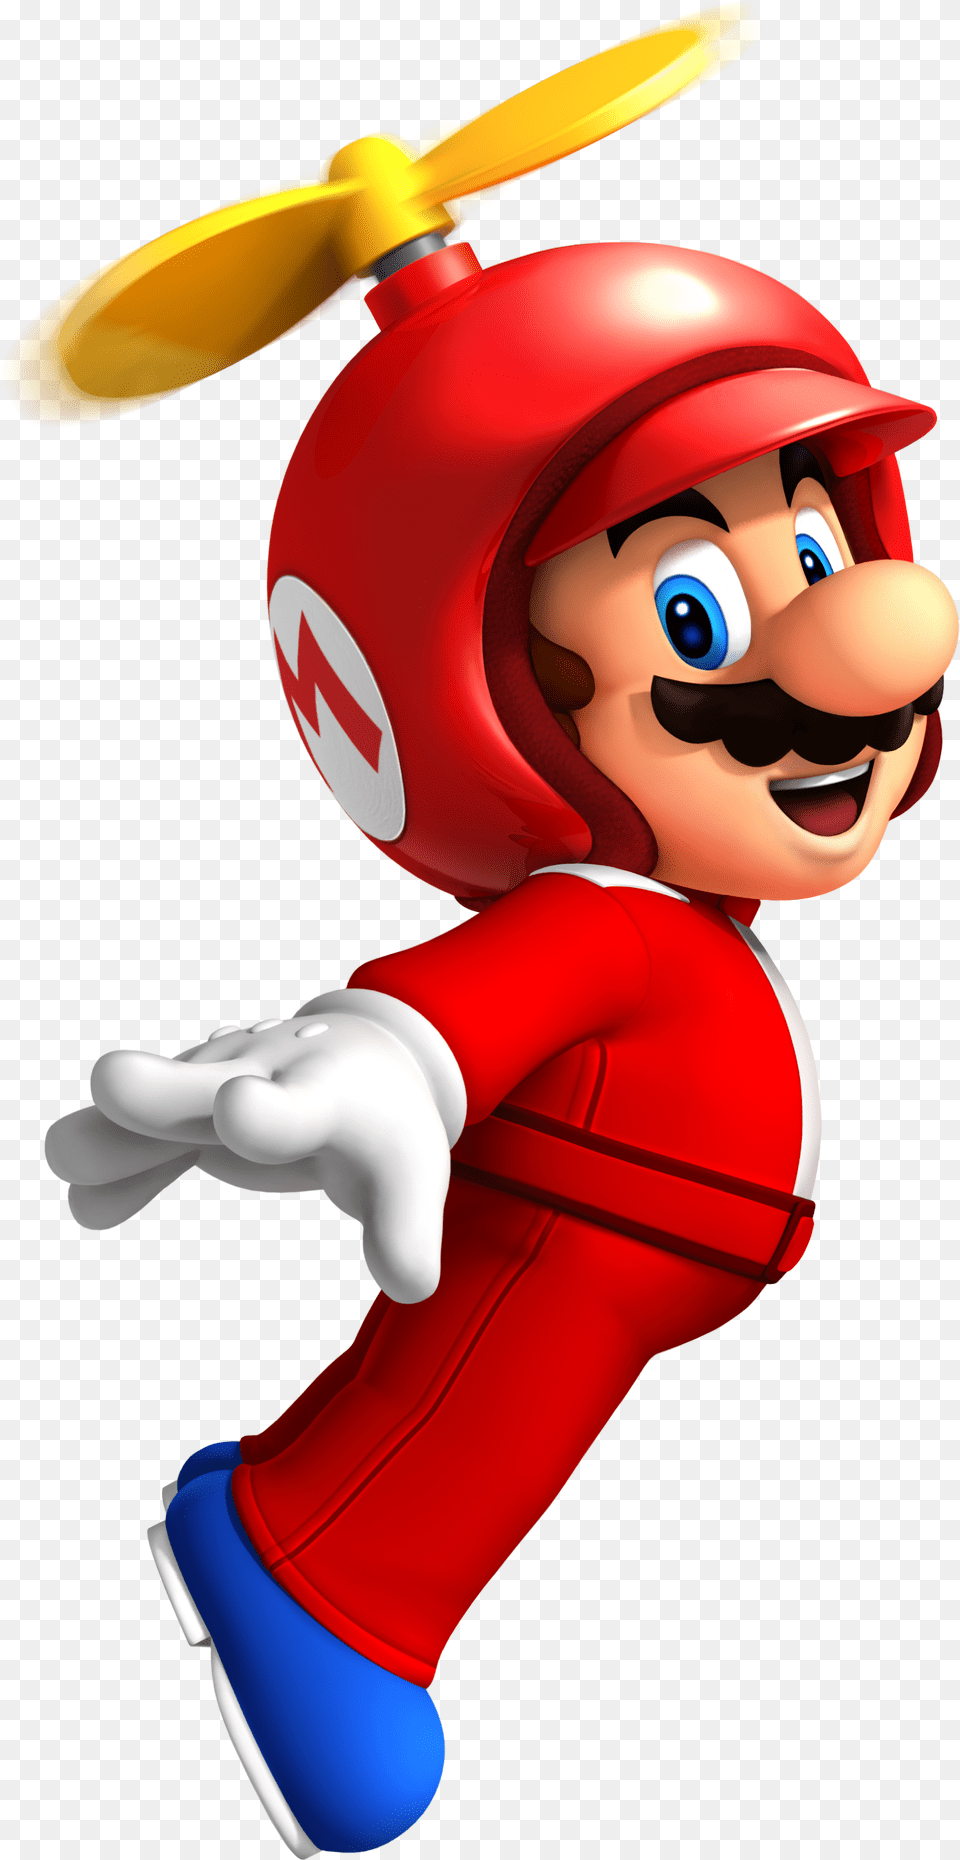 Mario Clipart Images New Super Mario Bros Wii Mario, Game, Super Mario, Baby, Face Free Transparent Png